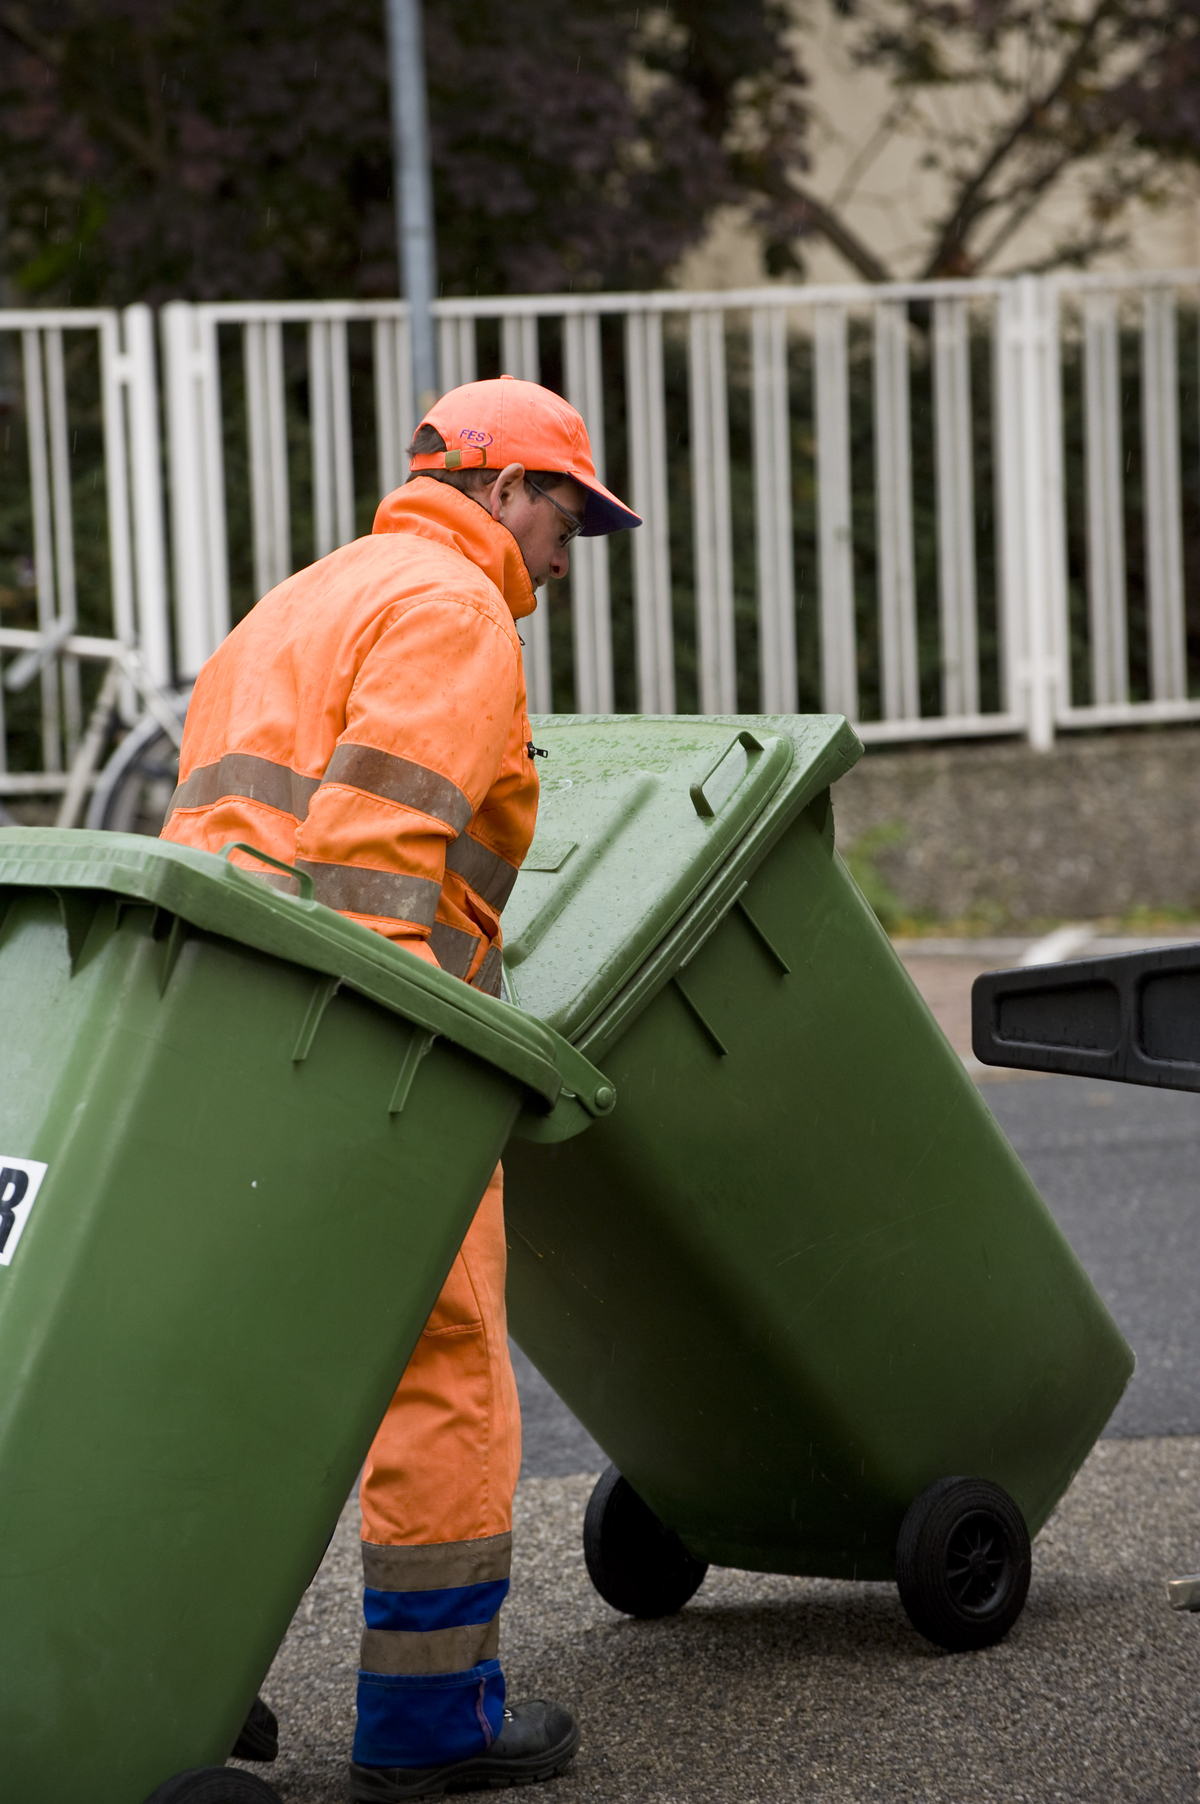 Zuverlässige Mülltonnenleerung durch die FES in Frankfurt. Daten zur Leerung entnehmen Sie bitte dem Abfallkalender im Web oder in der App